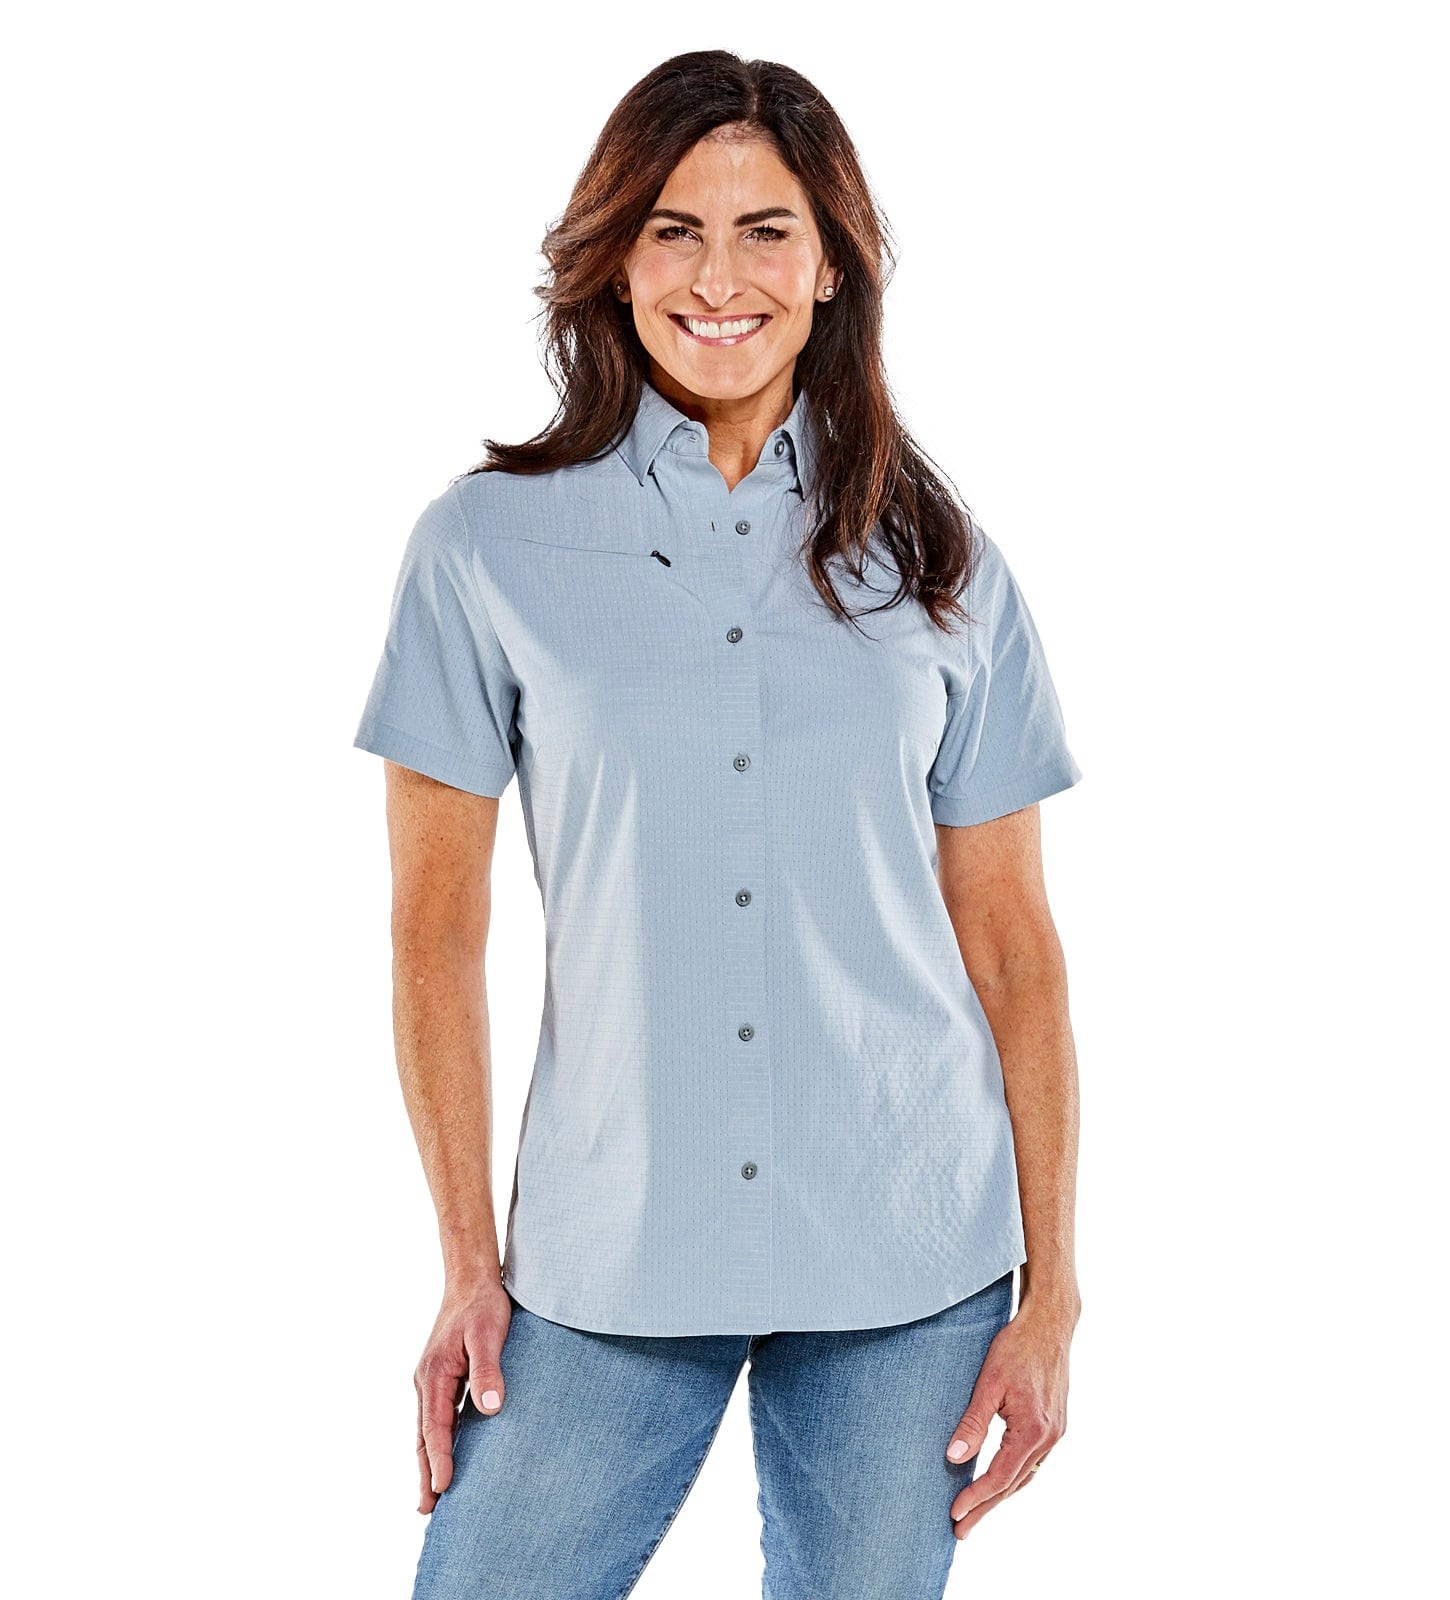 Naturalist Men's Short Sleeve Button Up Shirt, Blue Mist / L